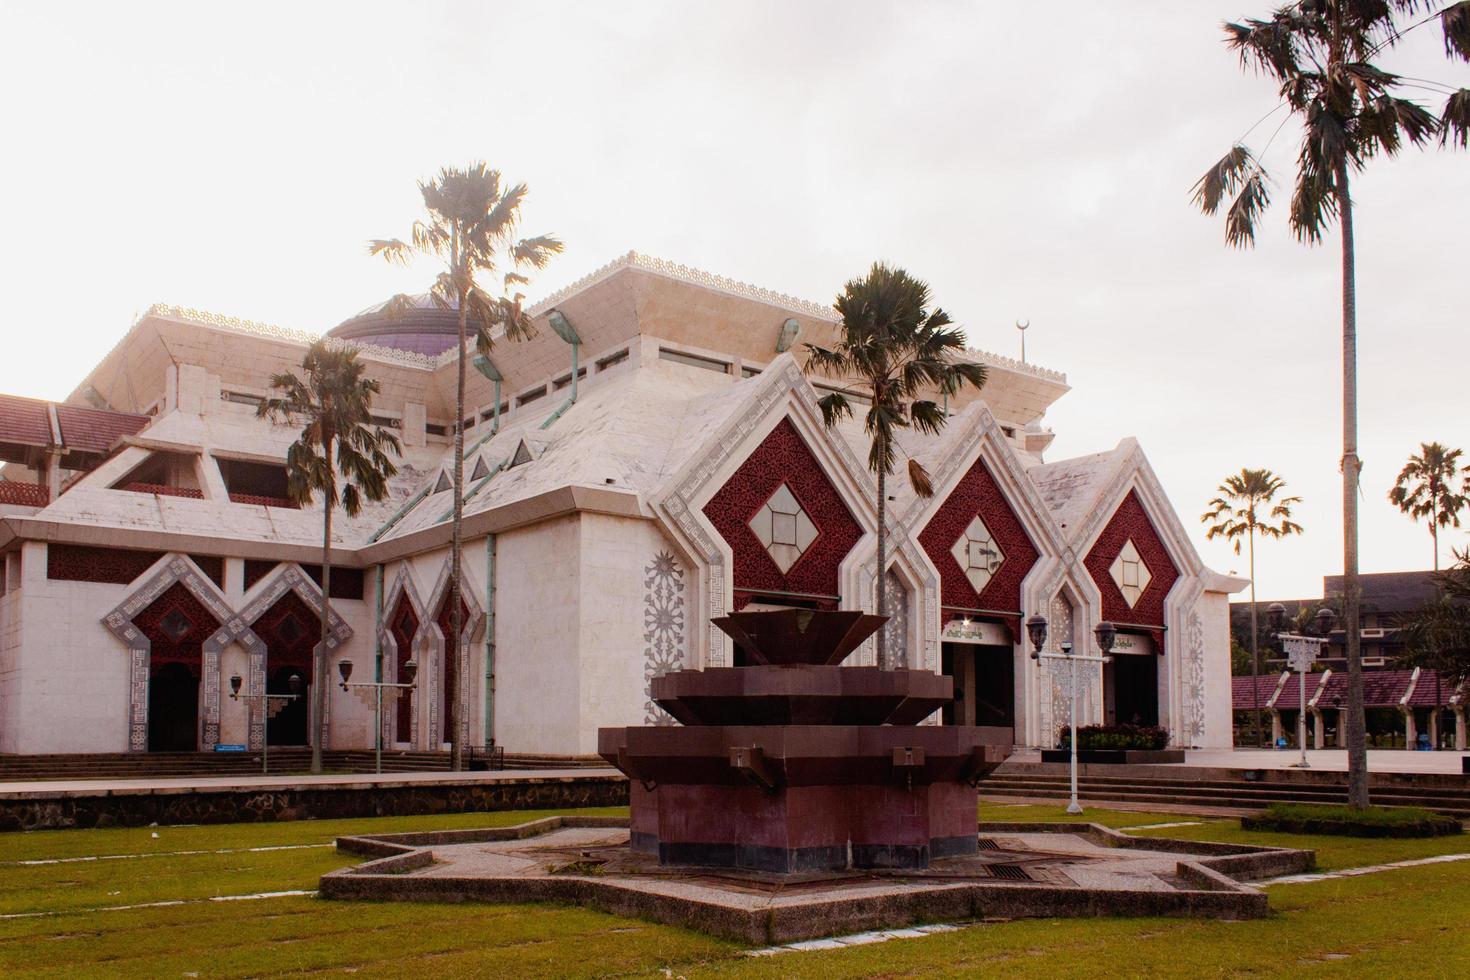 schön beim Zinn Moschee Jakarta, islamisch Hintergrund Moschee foto